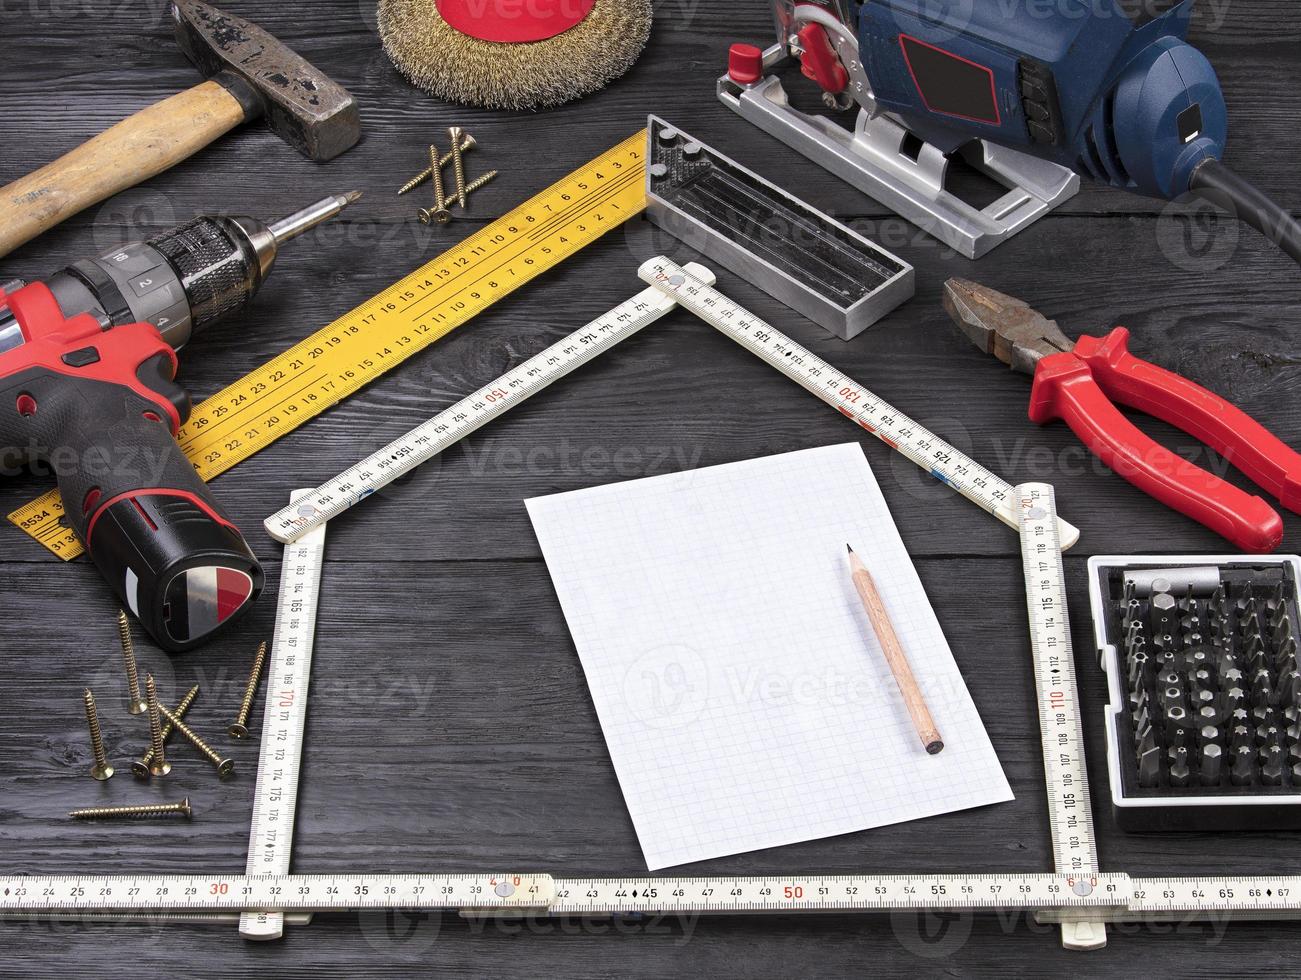 verktyg för konstruktion och reparation på en svart träbakgrund runt ett vitt pappersark med en penna foto